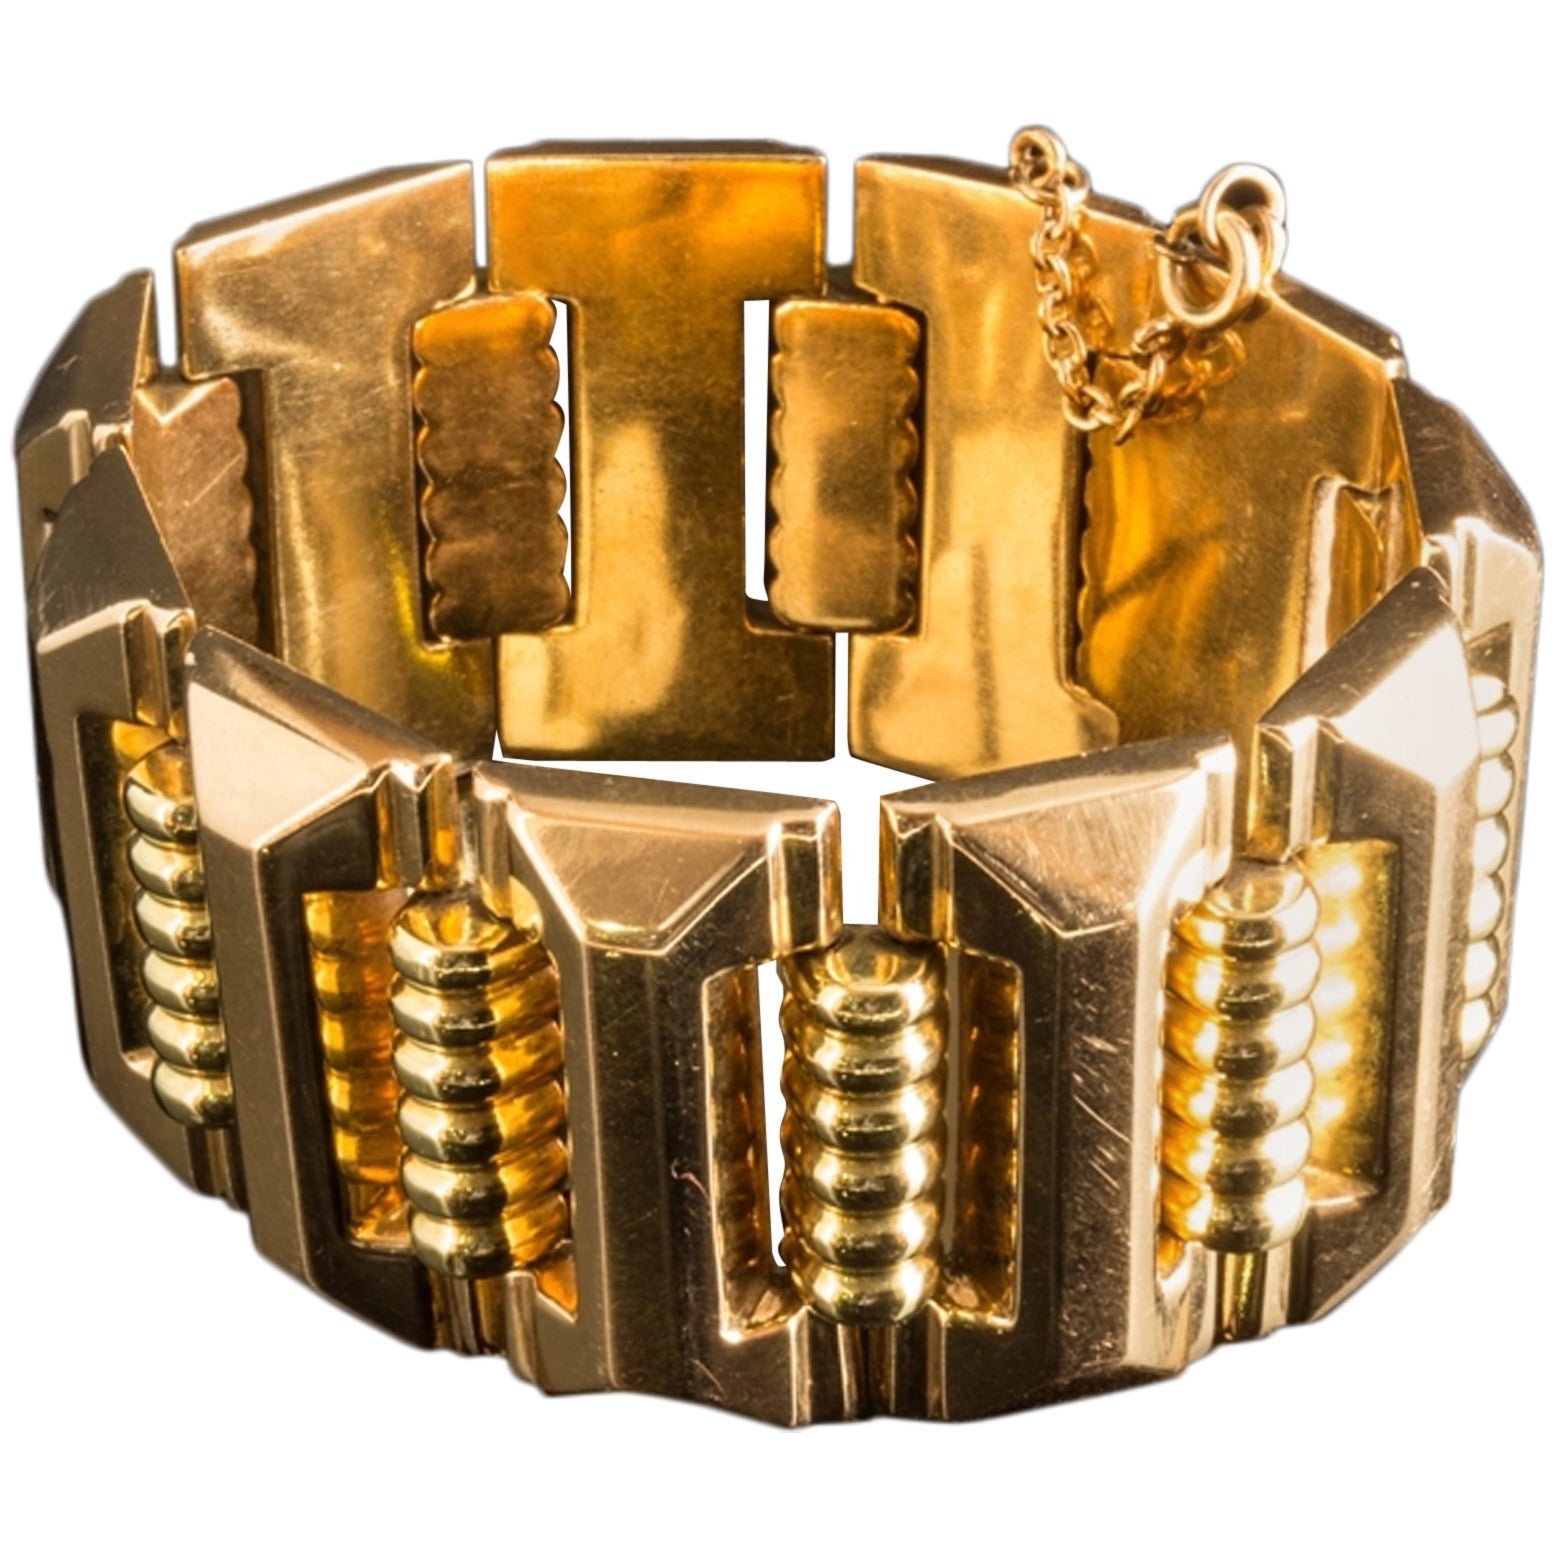 Stunning Art Deco Gold Bracelet